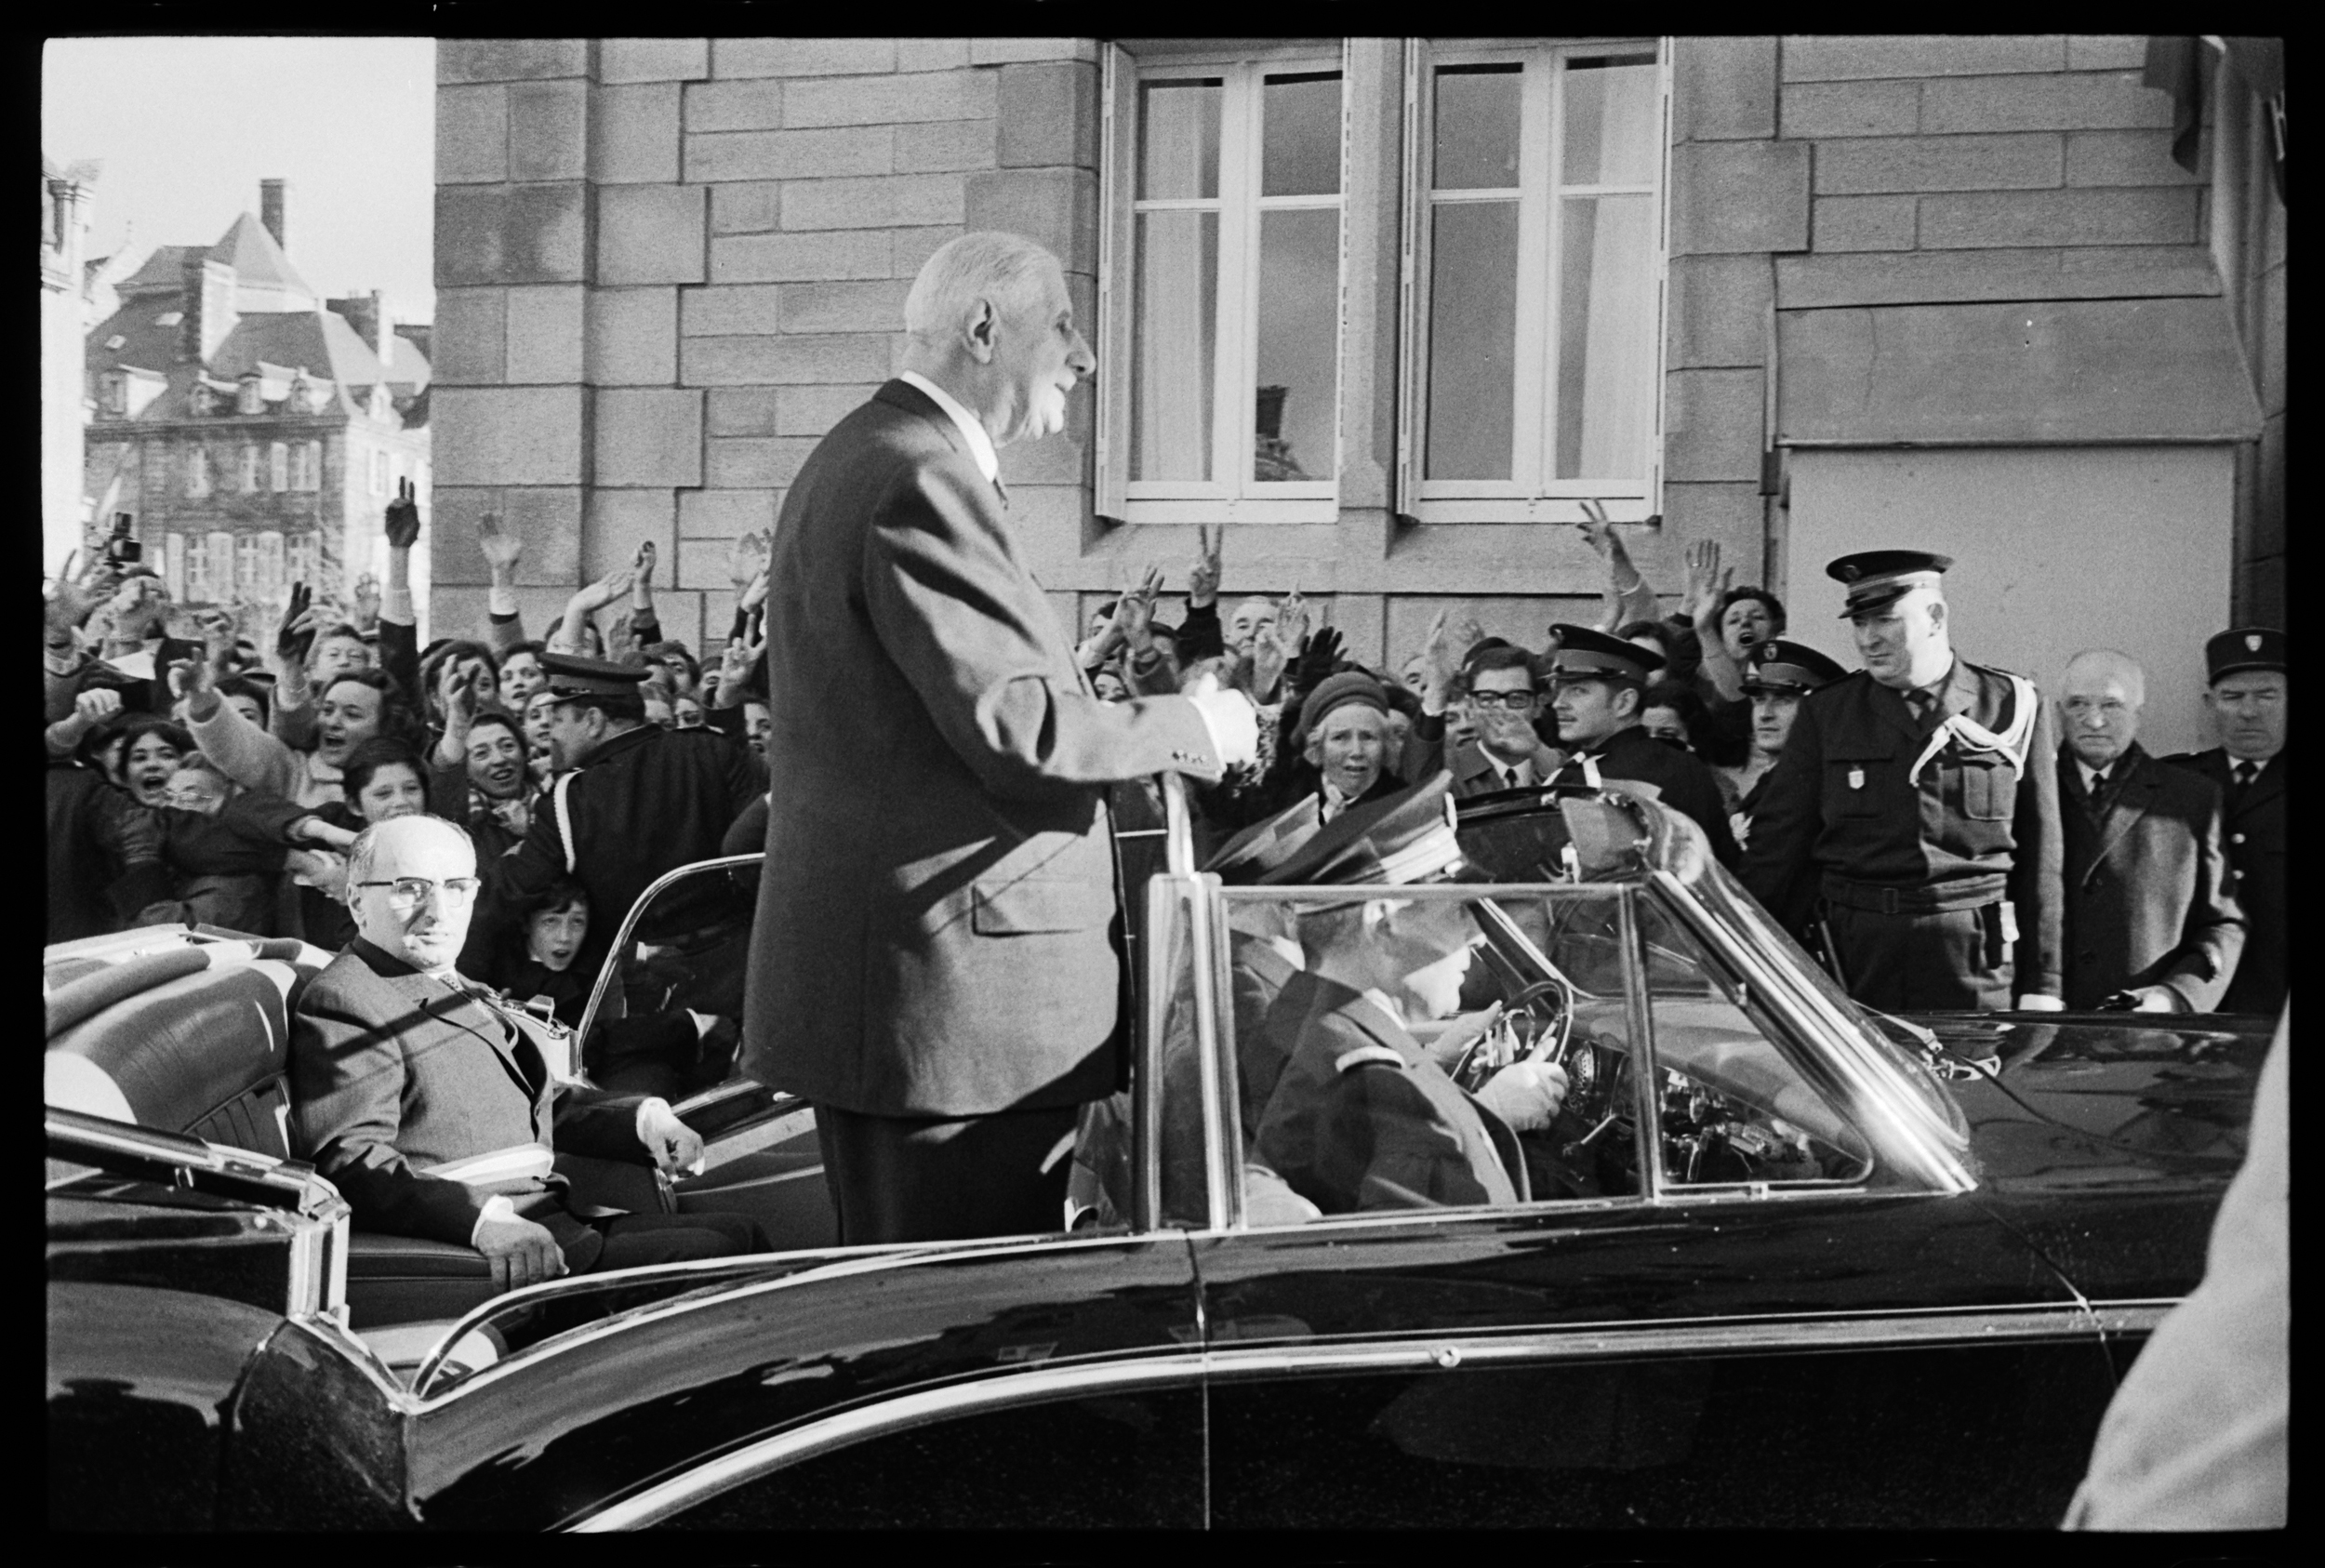 Visite du général de Gaulle à Quimper le 2 février 1969. Photo : S. Michalowski. Source : collections du Musée de Bretagne. Numéro d'inventaire : 986.0028.8014